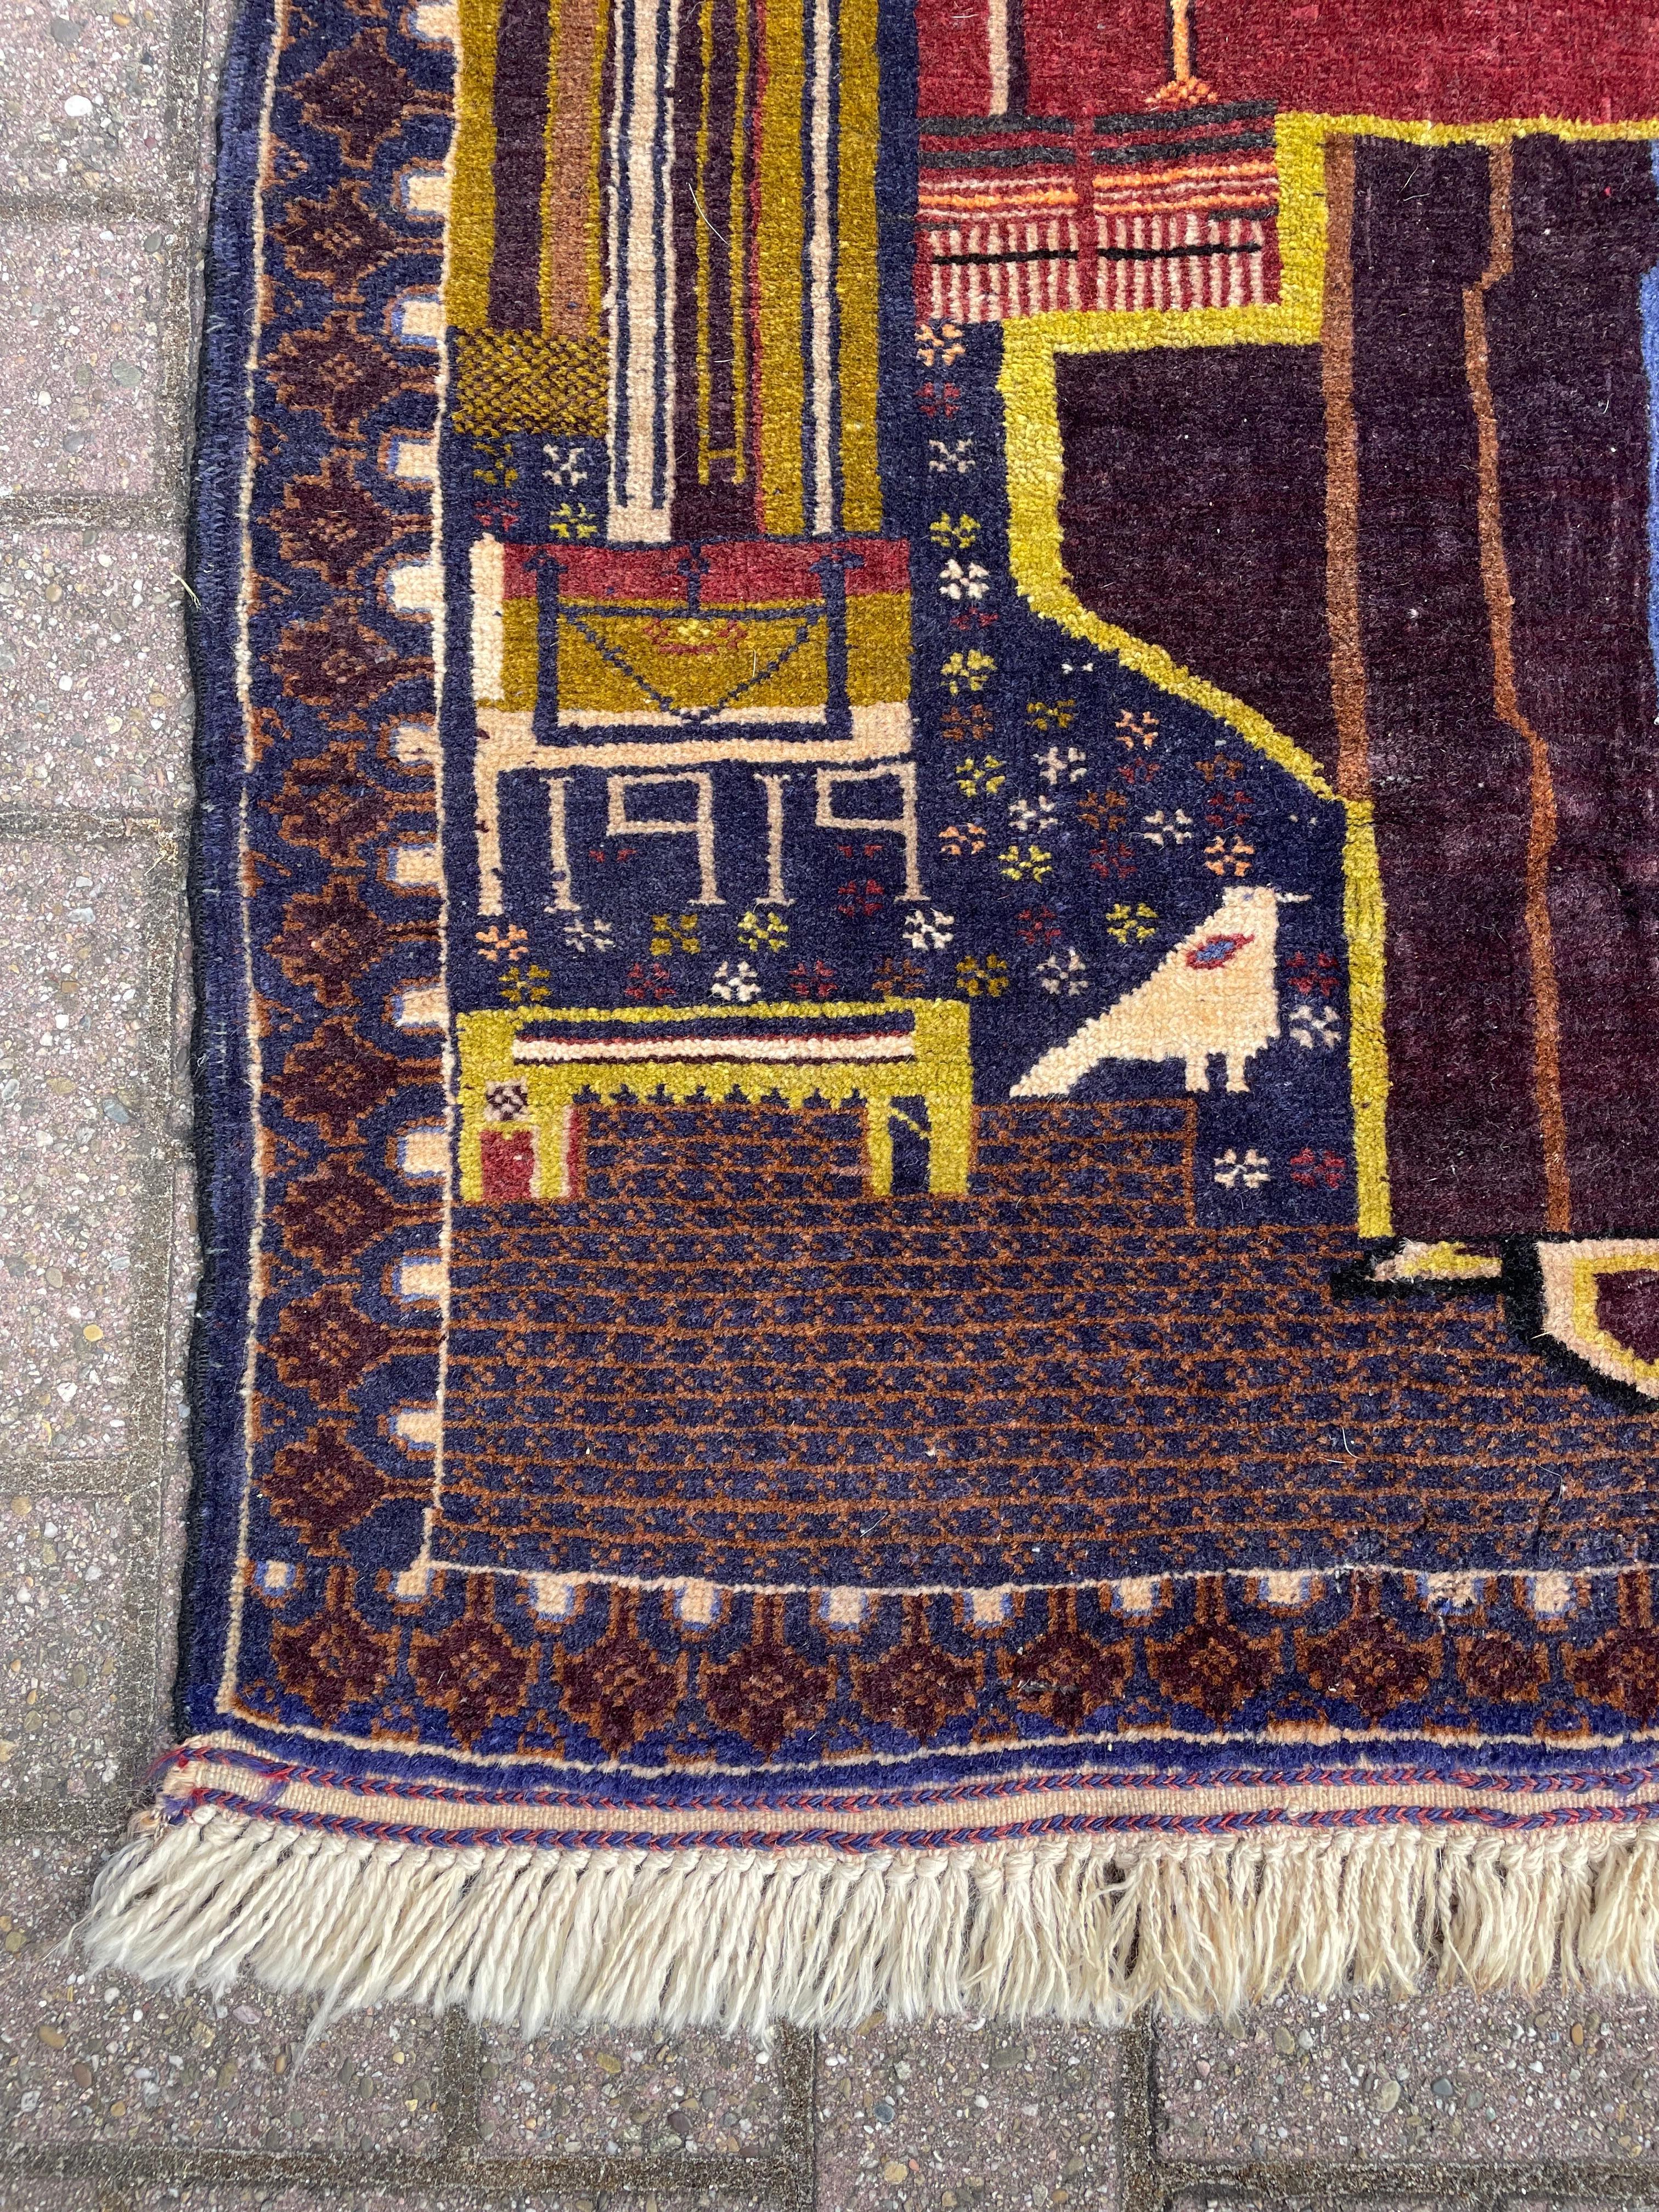 afghan war rugs 1980s